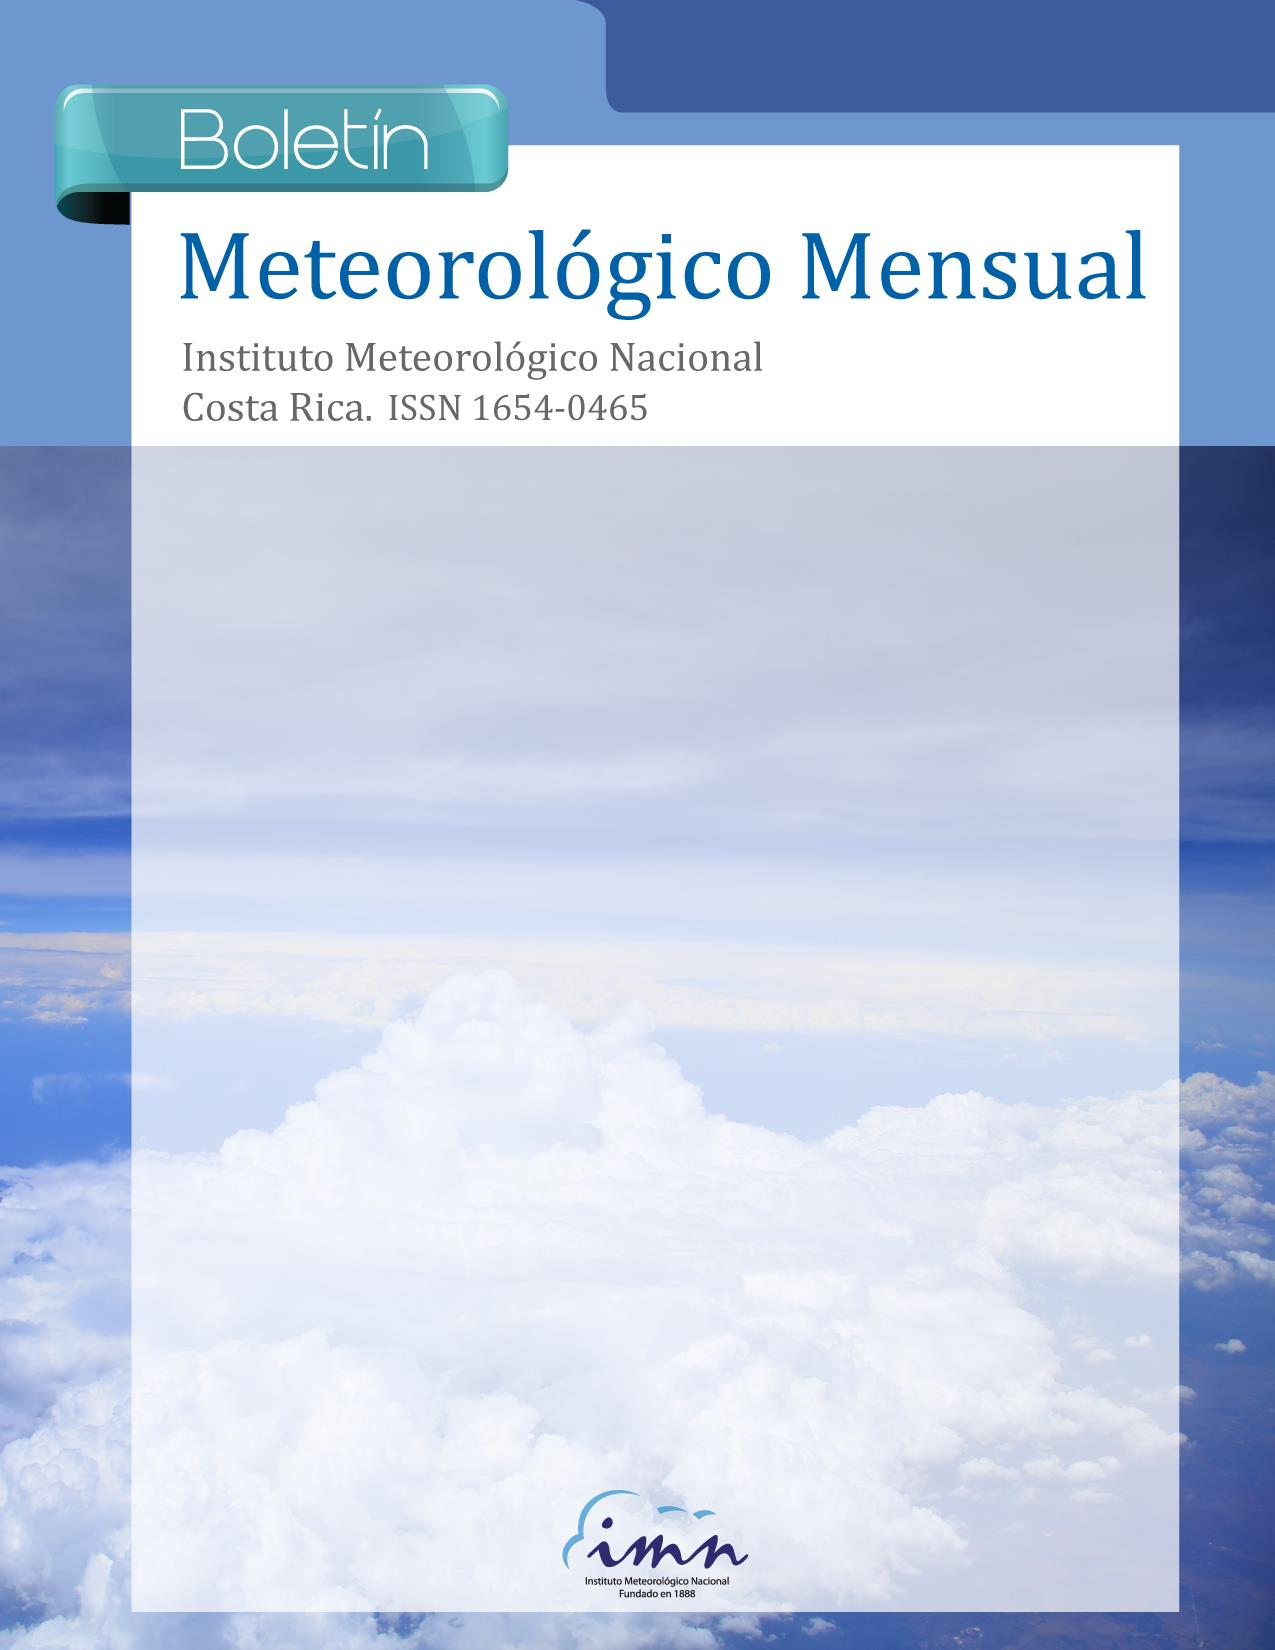 1 Resumen Meteorológico Boletín Enero Meteorológico 215 Mensual Contenido Página Resumen Meteorológico Mensual...2 Información Climática Estaciones termopluviométricas.